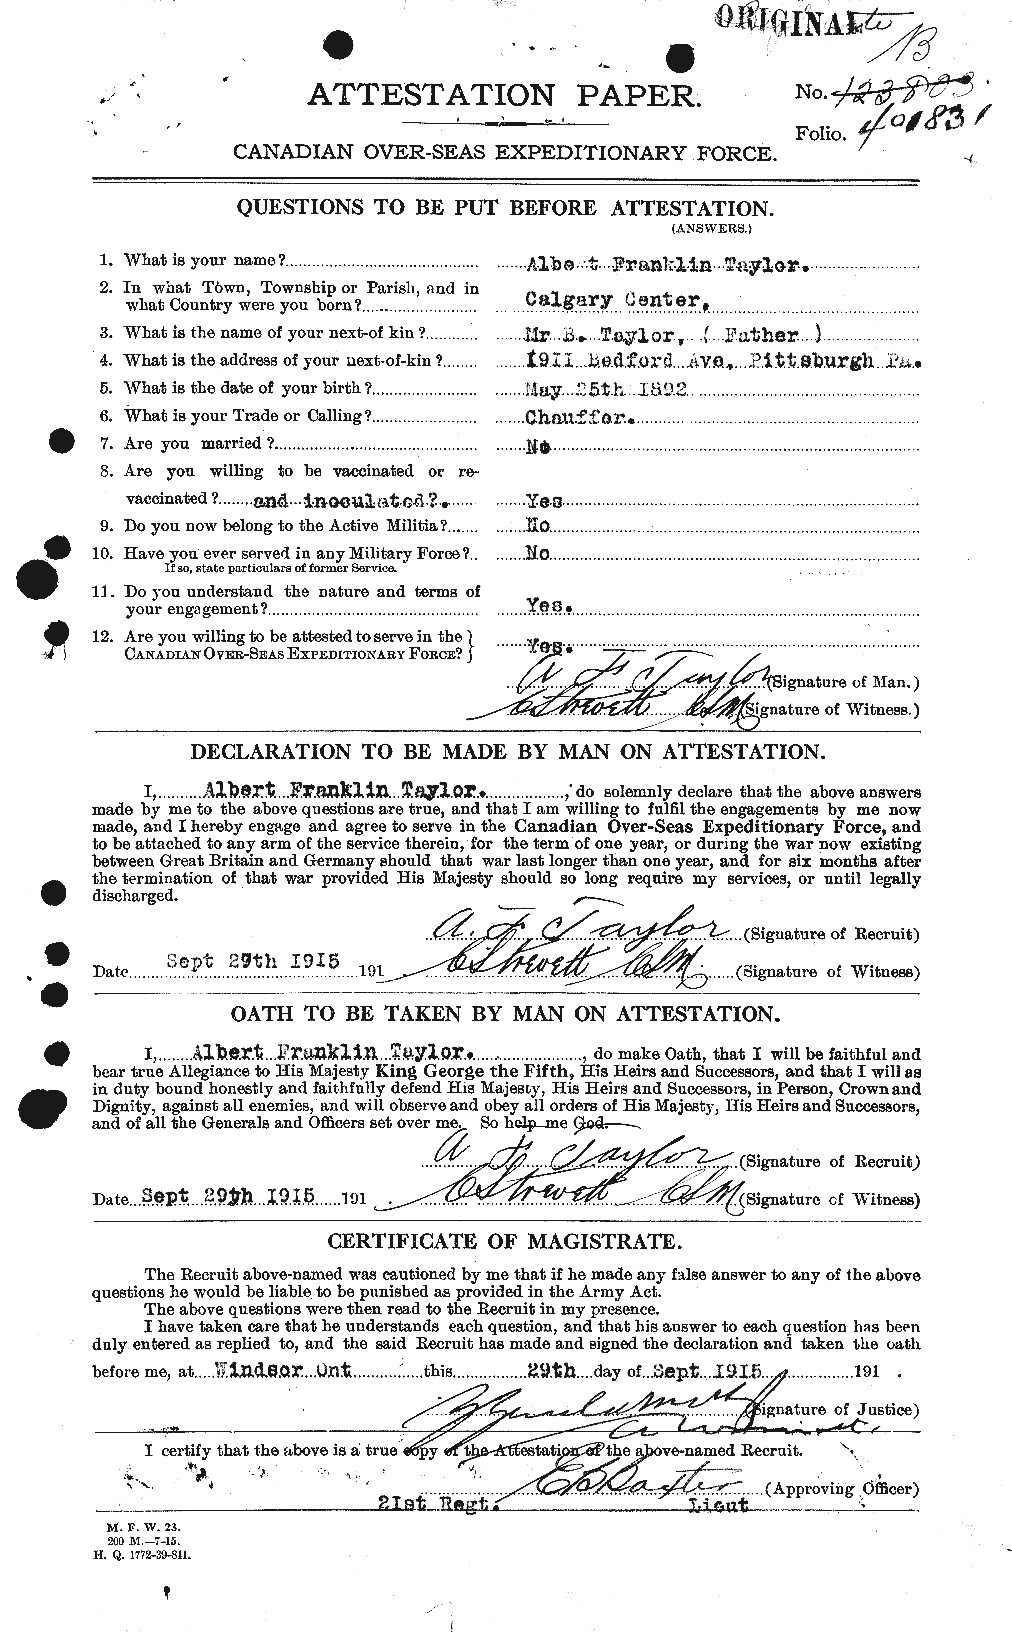 Dossiers du Personnel de la Première Guerre mondiale - CEC 626111a